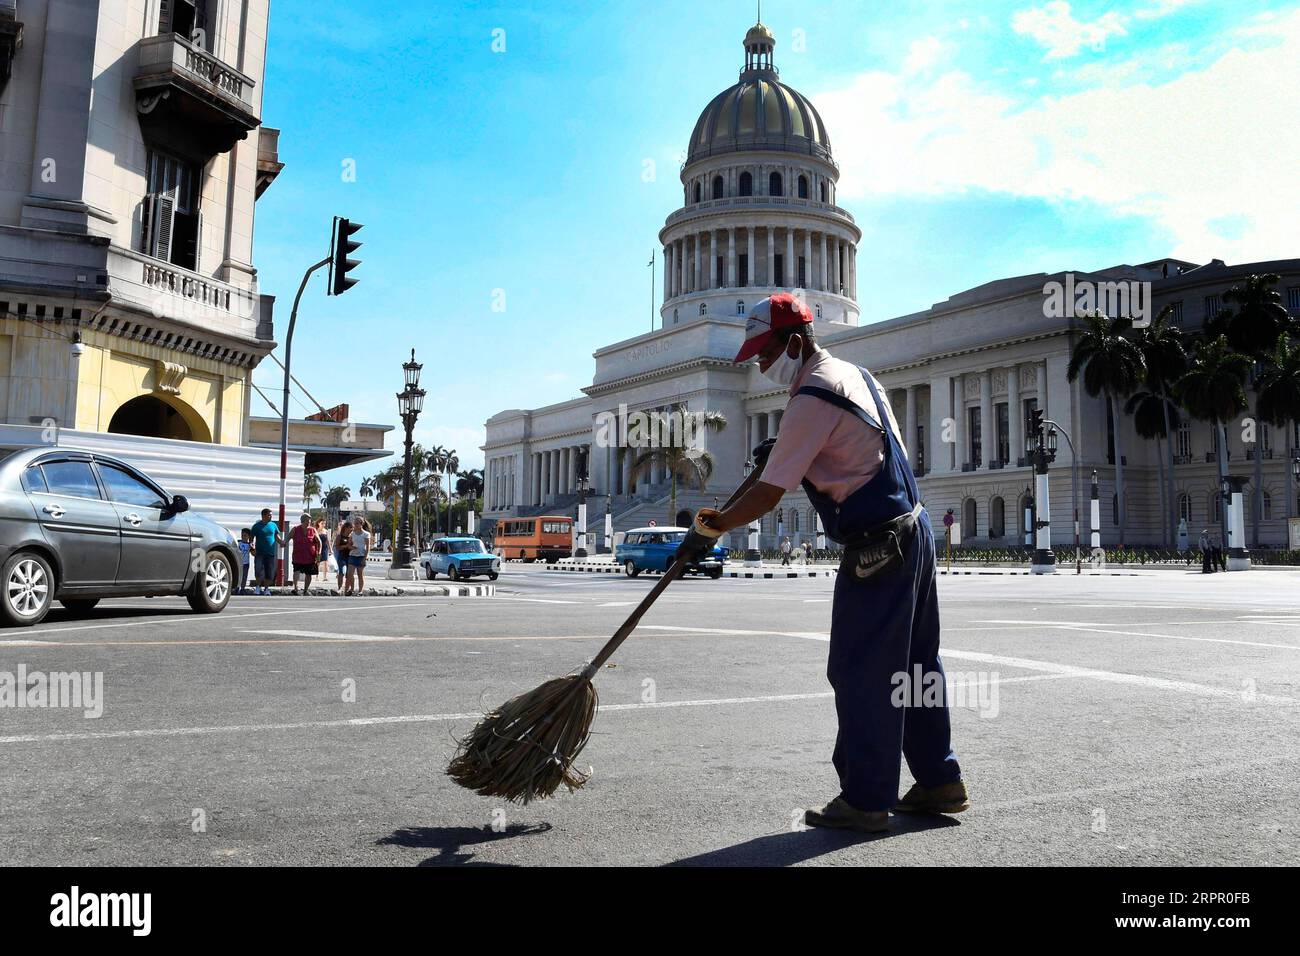 200324 -- L'AVANA, 24 marzo 2020 Xinhua -- Un uomo che indossa una maschera spazza via a l'Avana, Cuba, 23 marzo 2020. Il presidente cubano Miguel Diaz Canel lunedì ha esortato le istituzioni statali, i settori privati e le persone ad aumentare il controllo e la disciplina nel tentativo di contenere l'epidemia di COVID-19. Foto di Joaquin Hernandez/Xinhua CUBA-HAVANA-COVID-19 PUBLICATIONxNOTxINxCHN Foto Stock